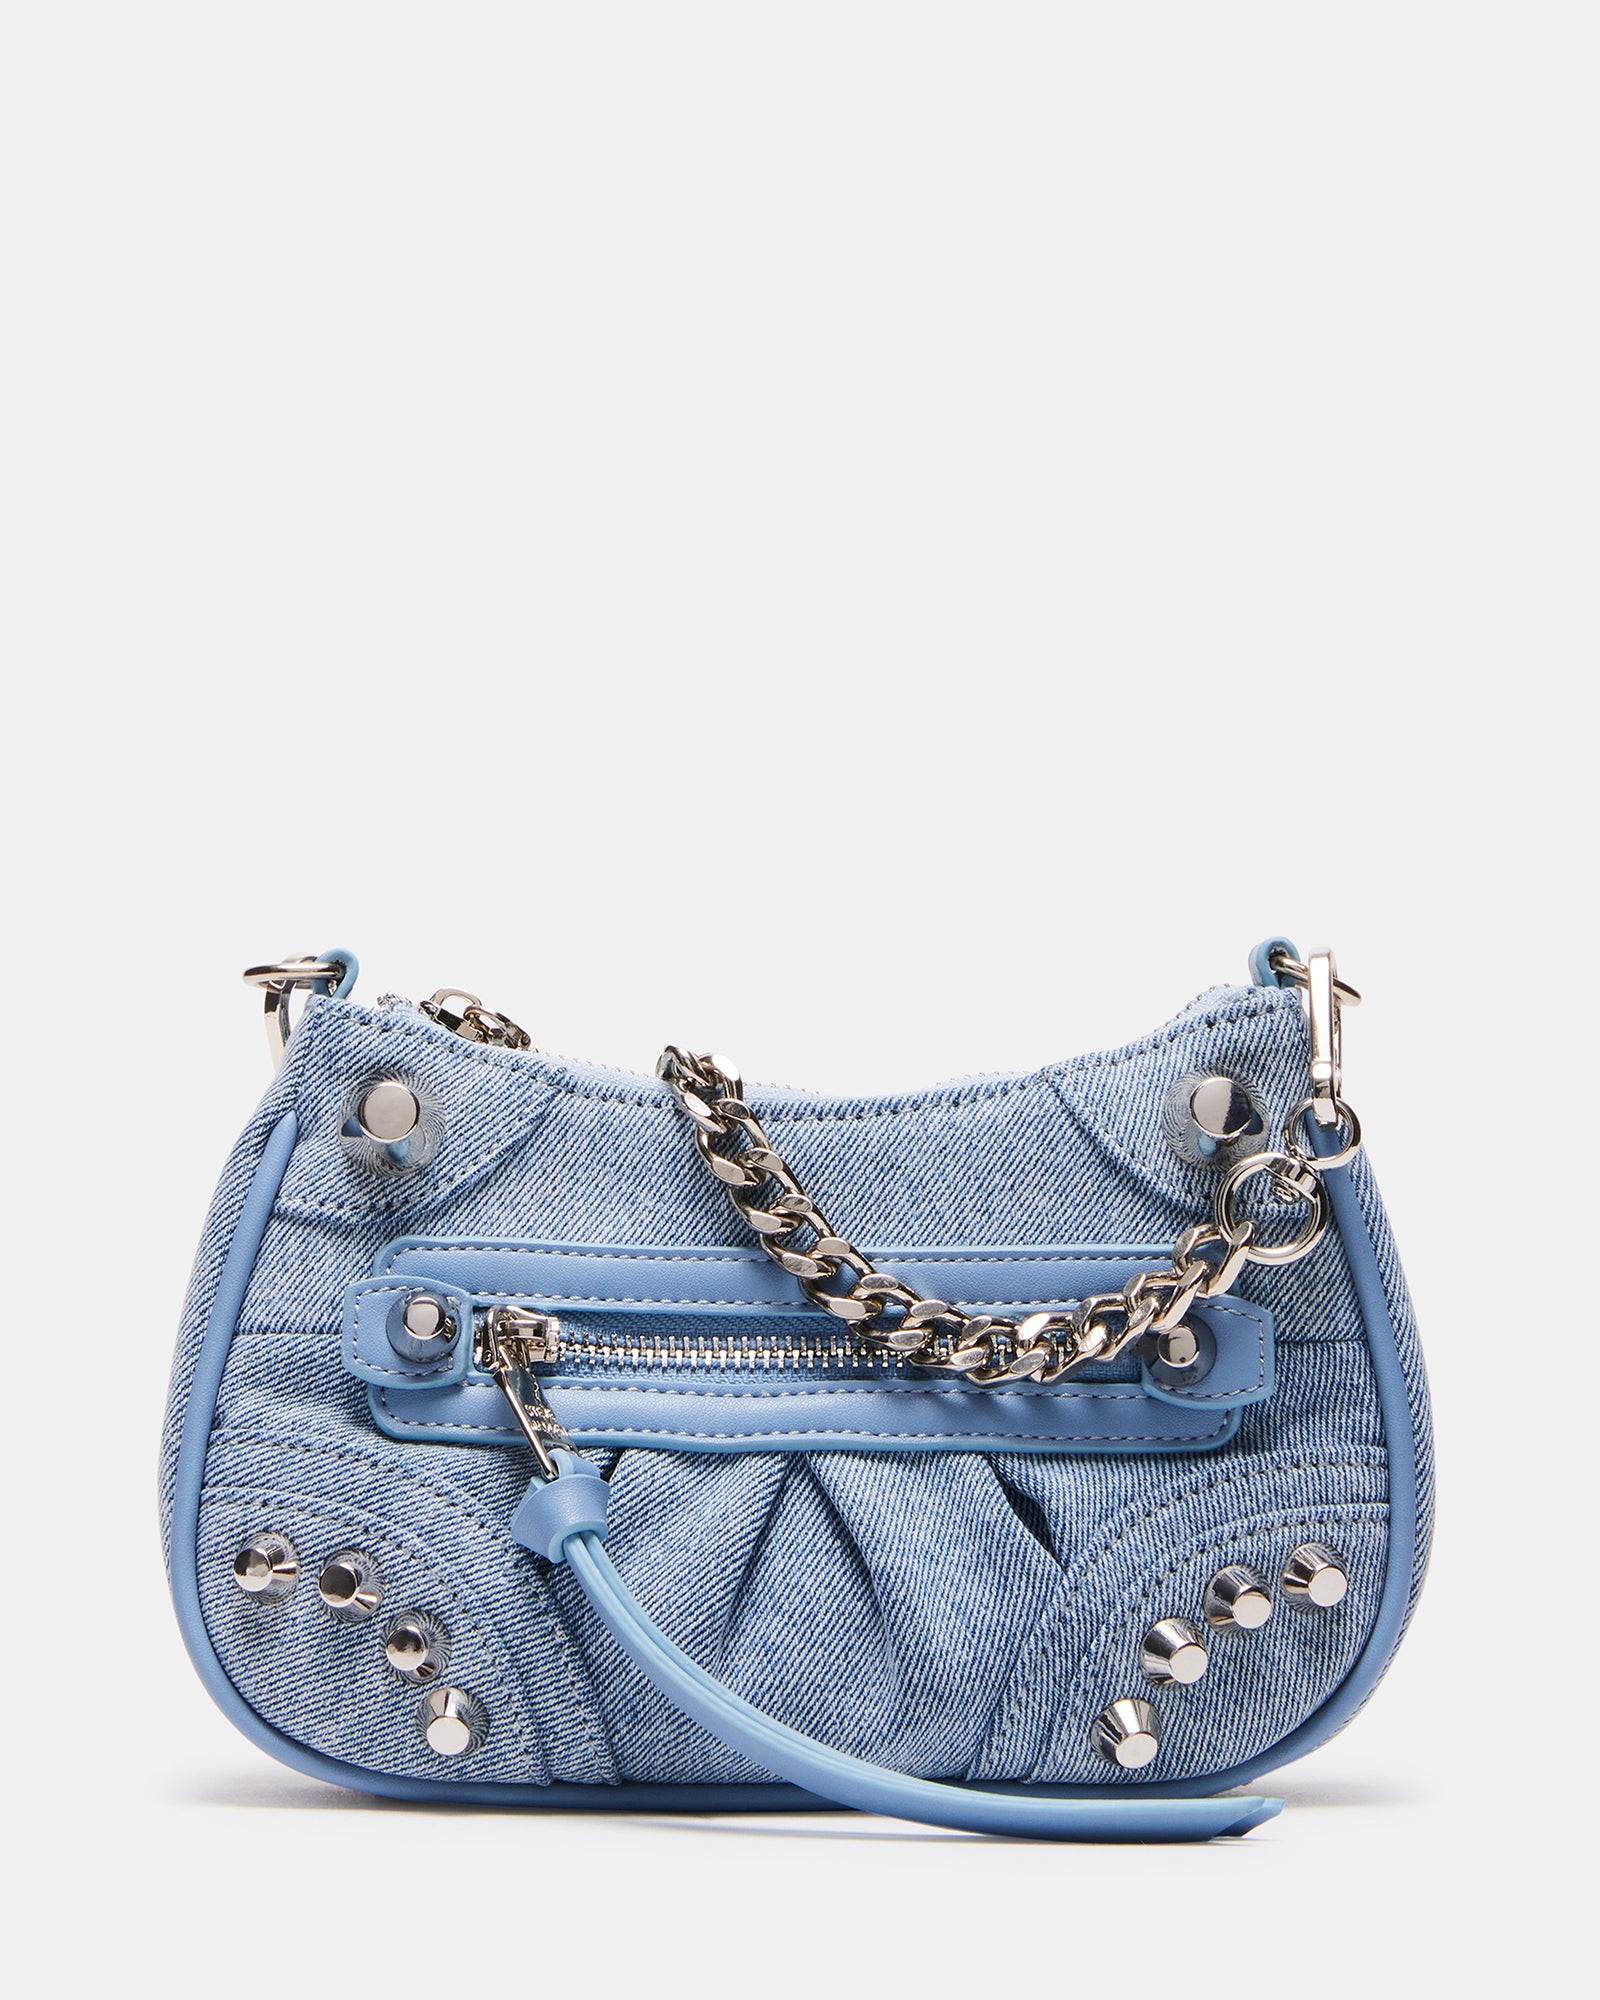 Buy Navy Blue Handbags for Women by STEVE MADDEN Online